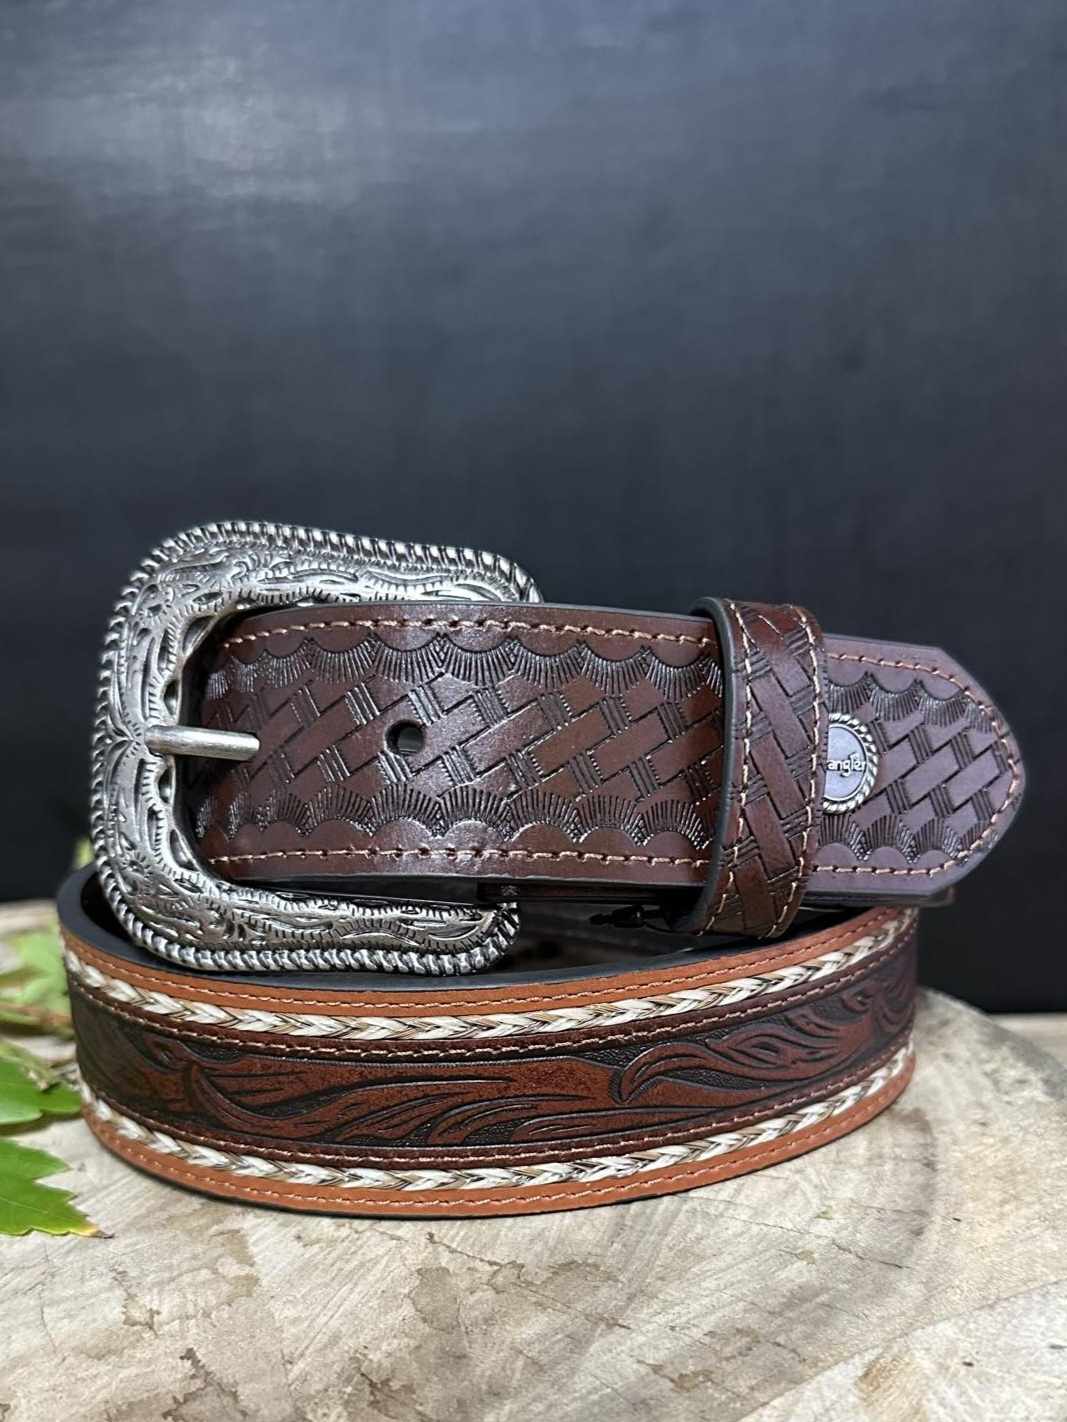 Wrangler Carden Tan Leather Belt